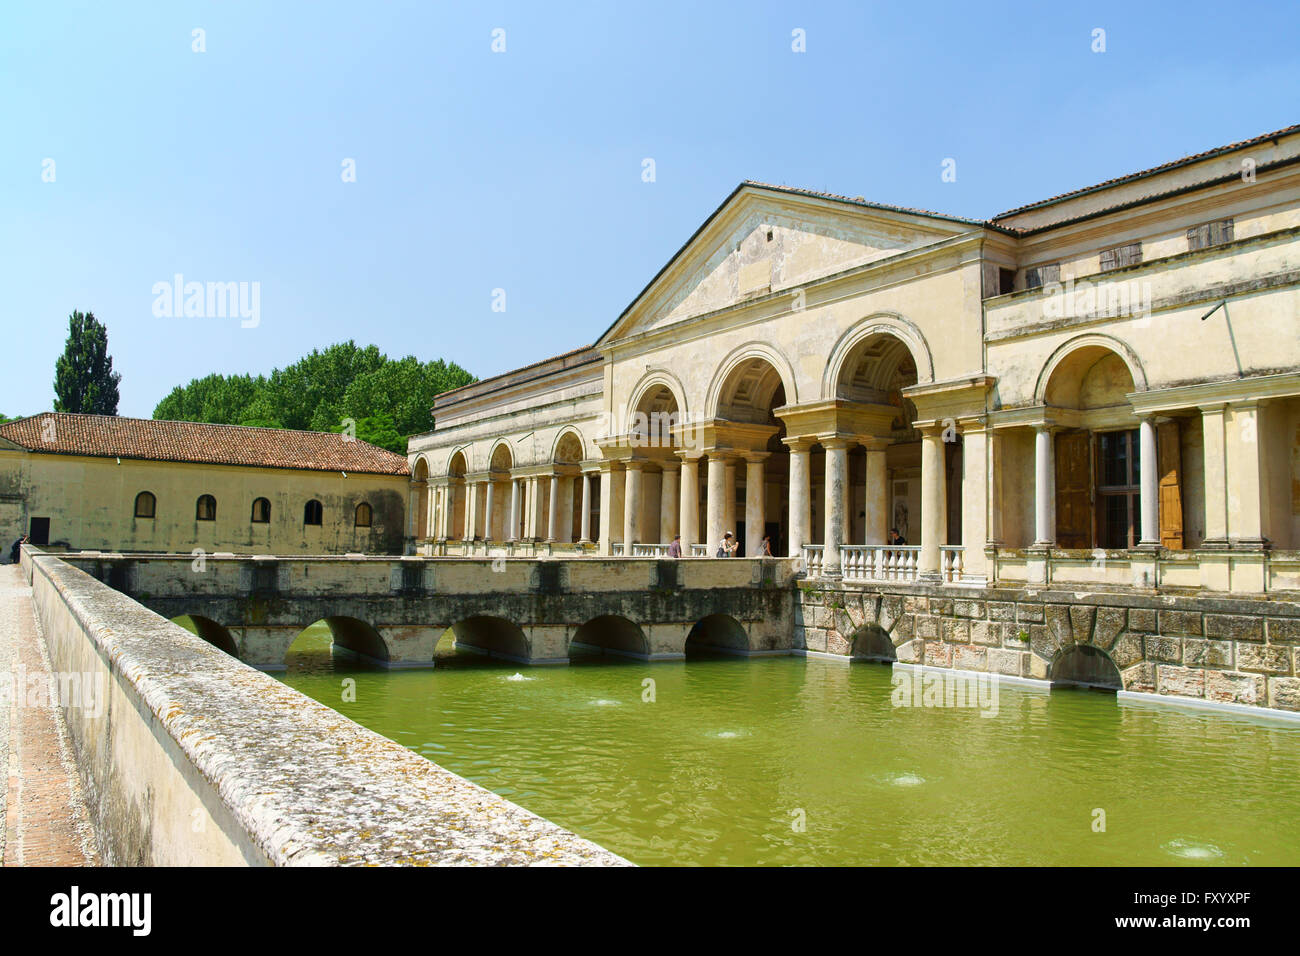 Mantua, Italien - 16. Juni 2013: Palazzo Te, Mantua, Italien. Dieser Palast wurde zwischen 1524 und 1534 vom Architekten Giulio Romano erbaut. Stockfoto